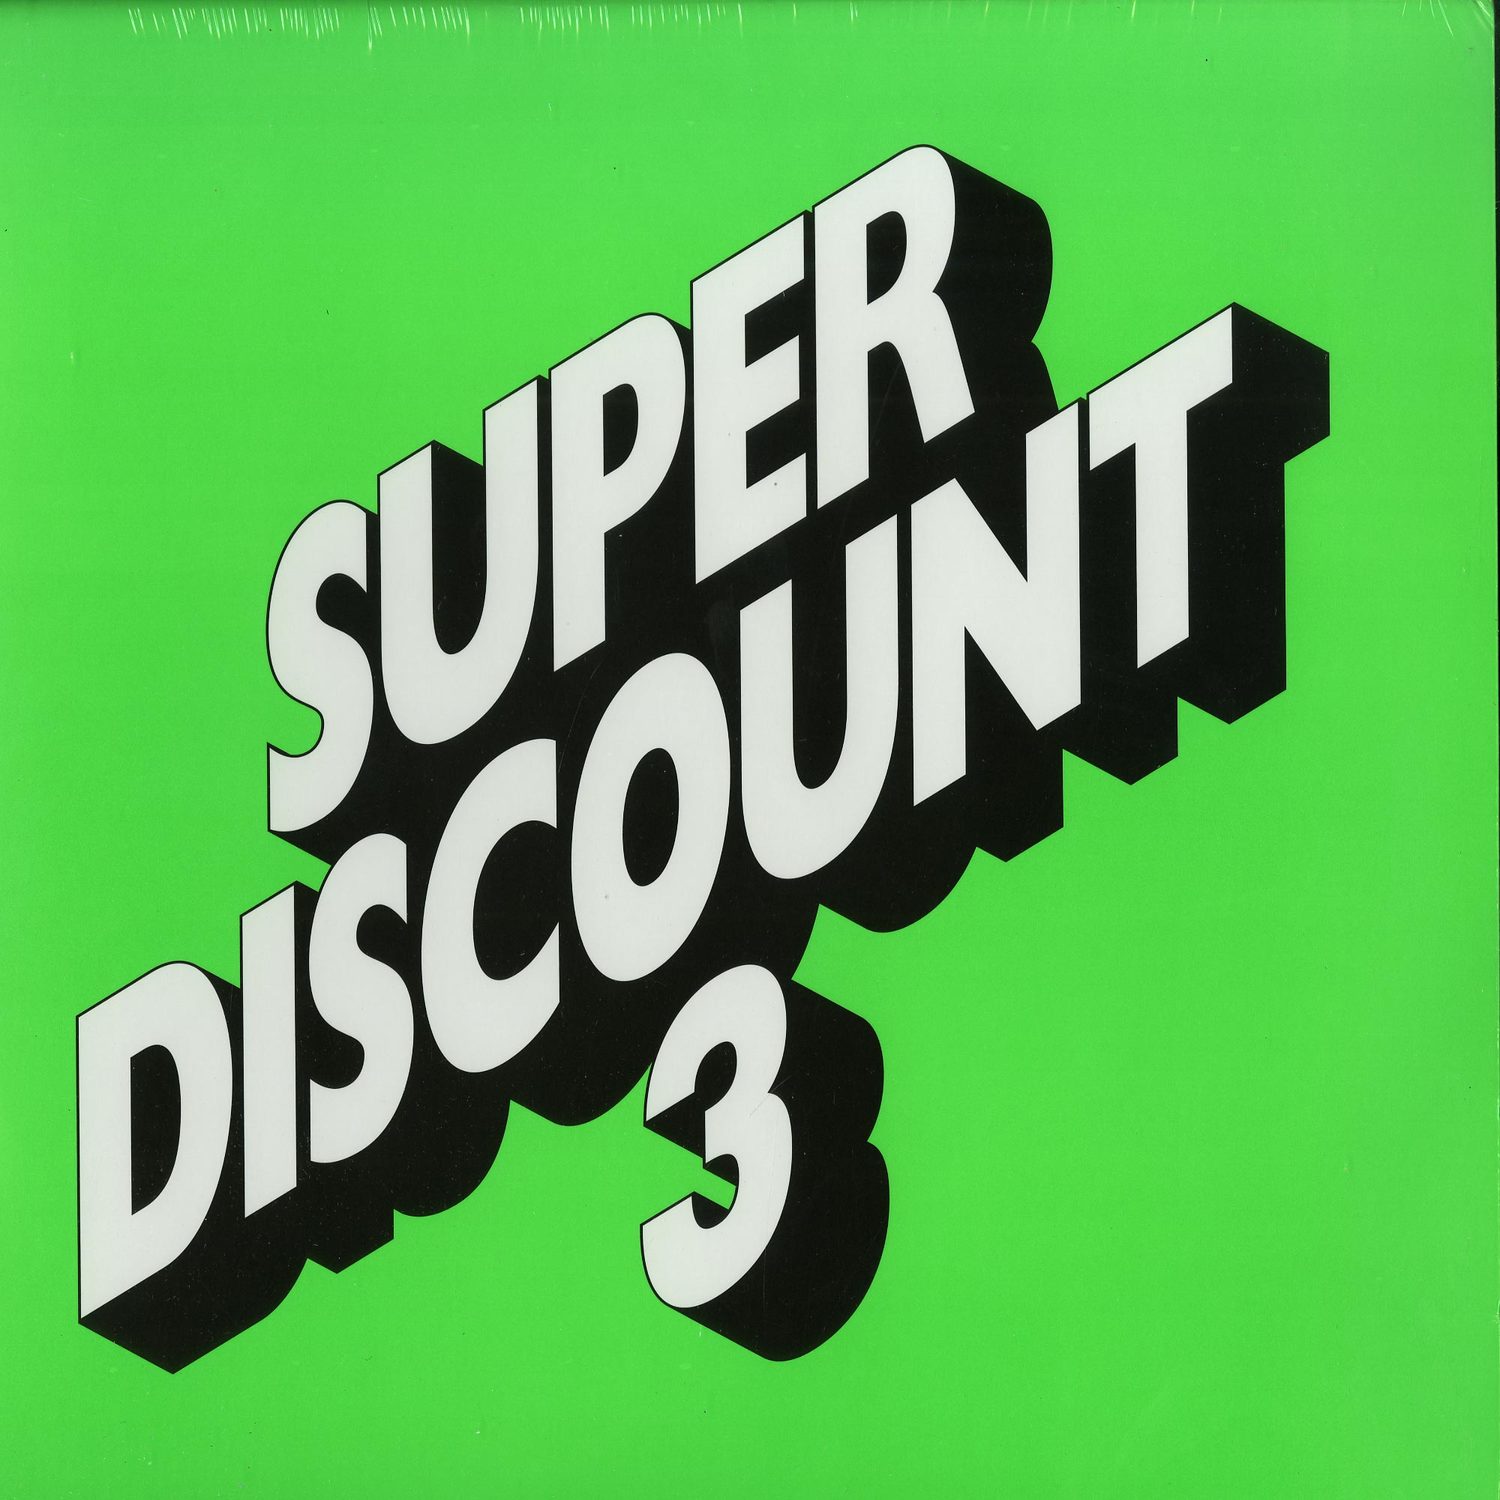 Etienne De Crecy - SUPER DISCOUNT 3 